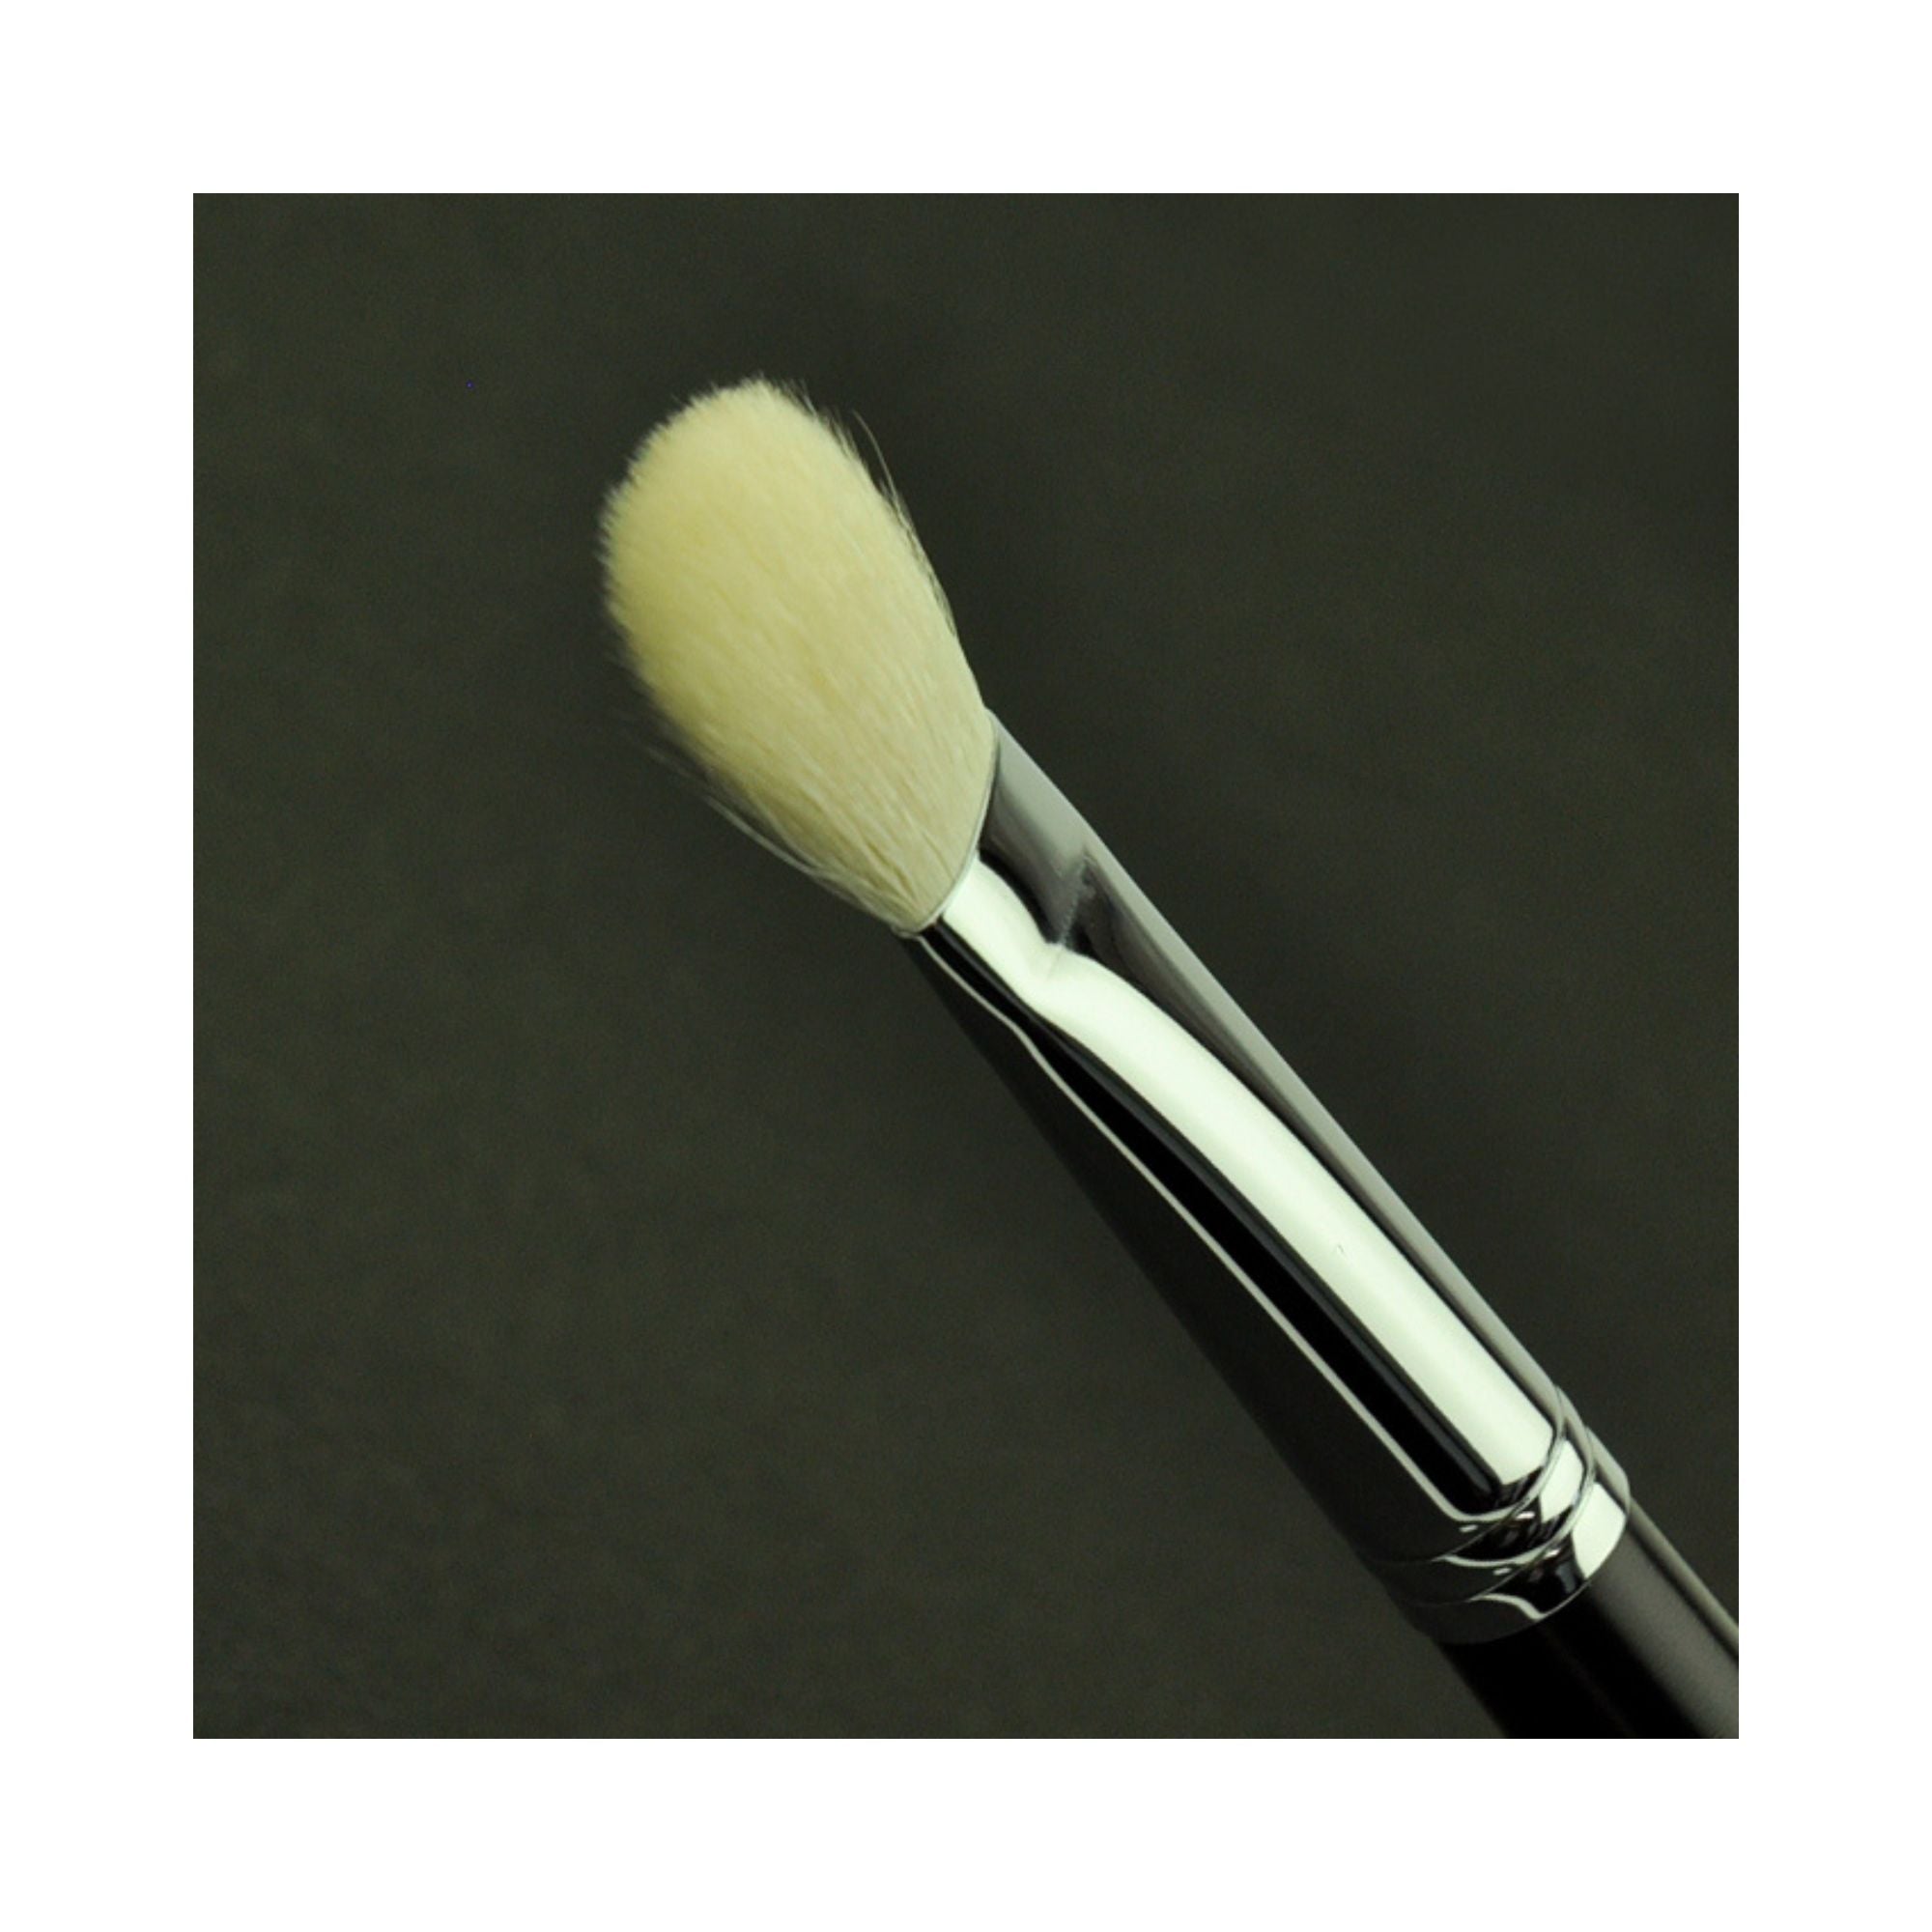 Tanseido YWQ12 Eyeshadow Brush - Fude Beauty, Japanese Makeup Brushes